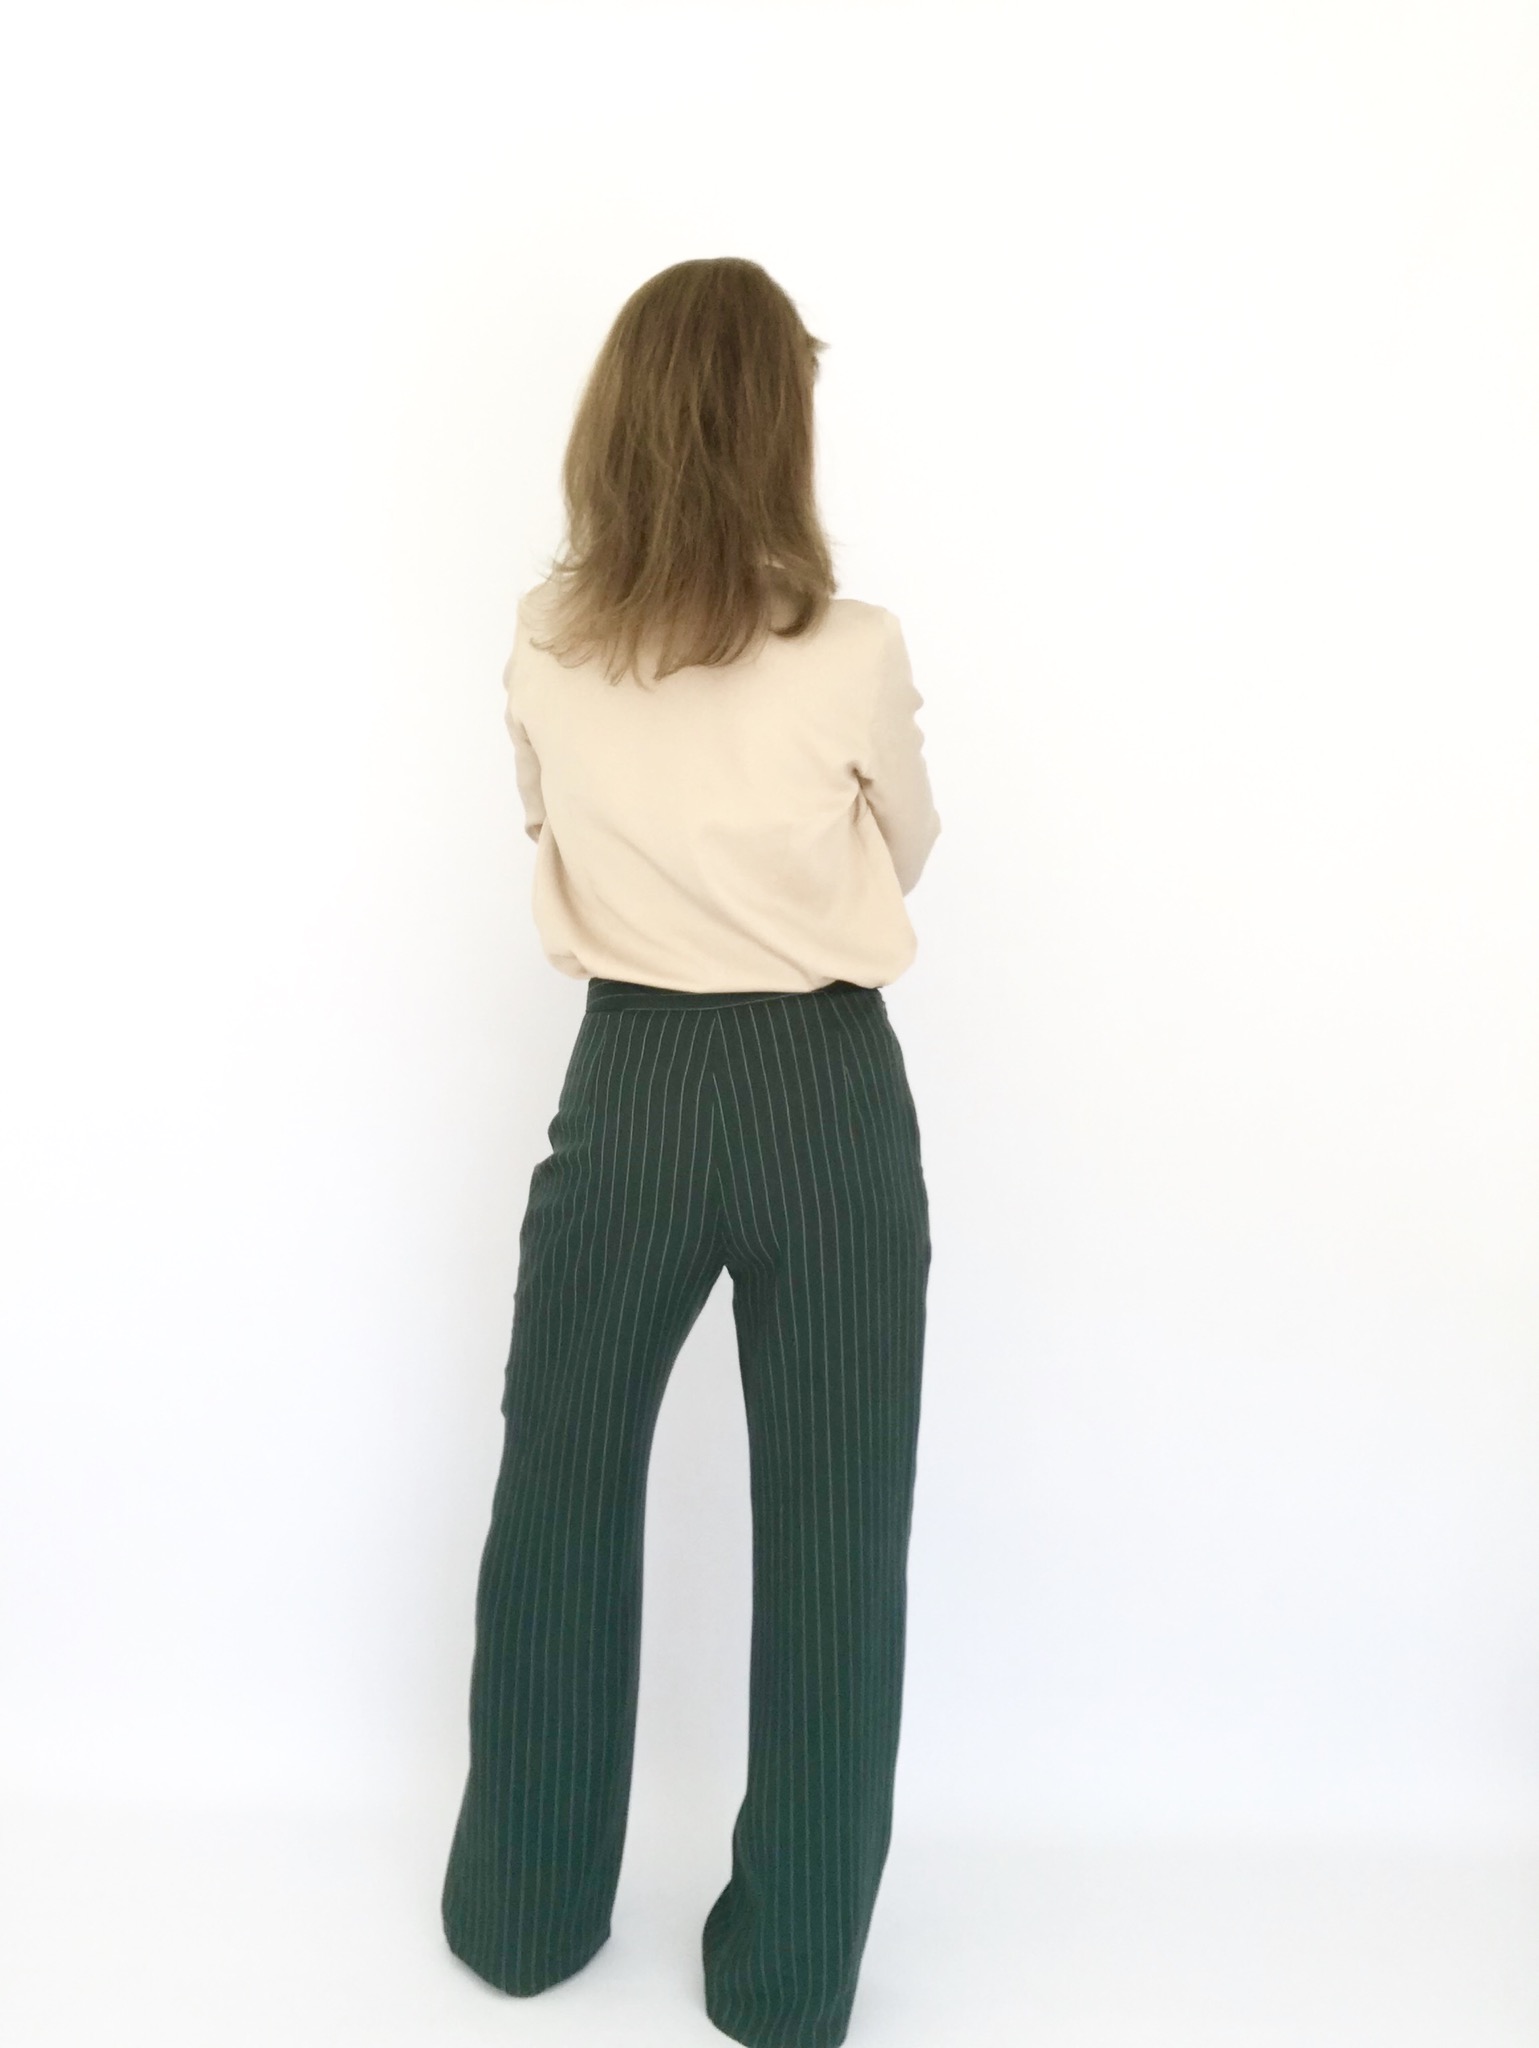 Patron couture pantalon femme - The Dina Jeans - patron couture pdf